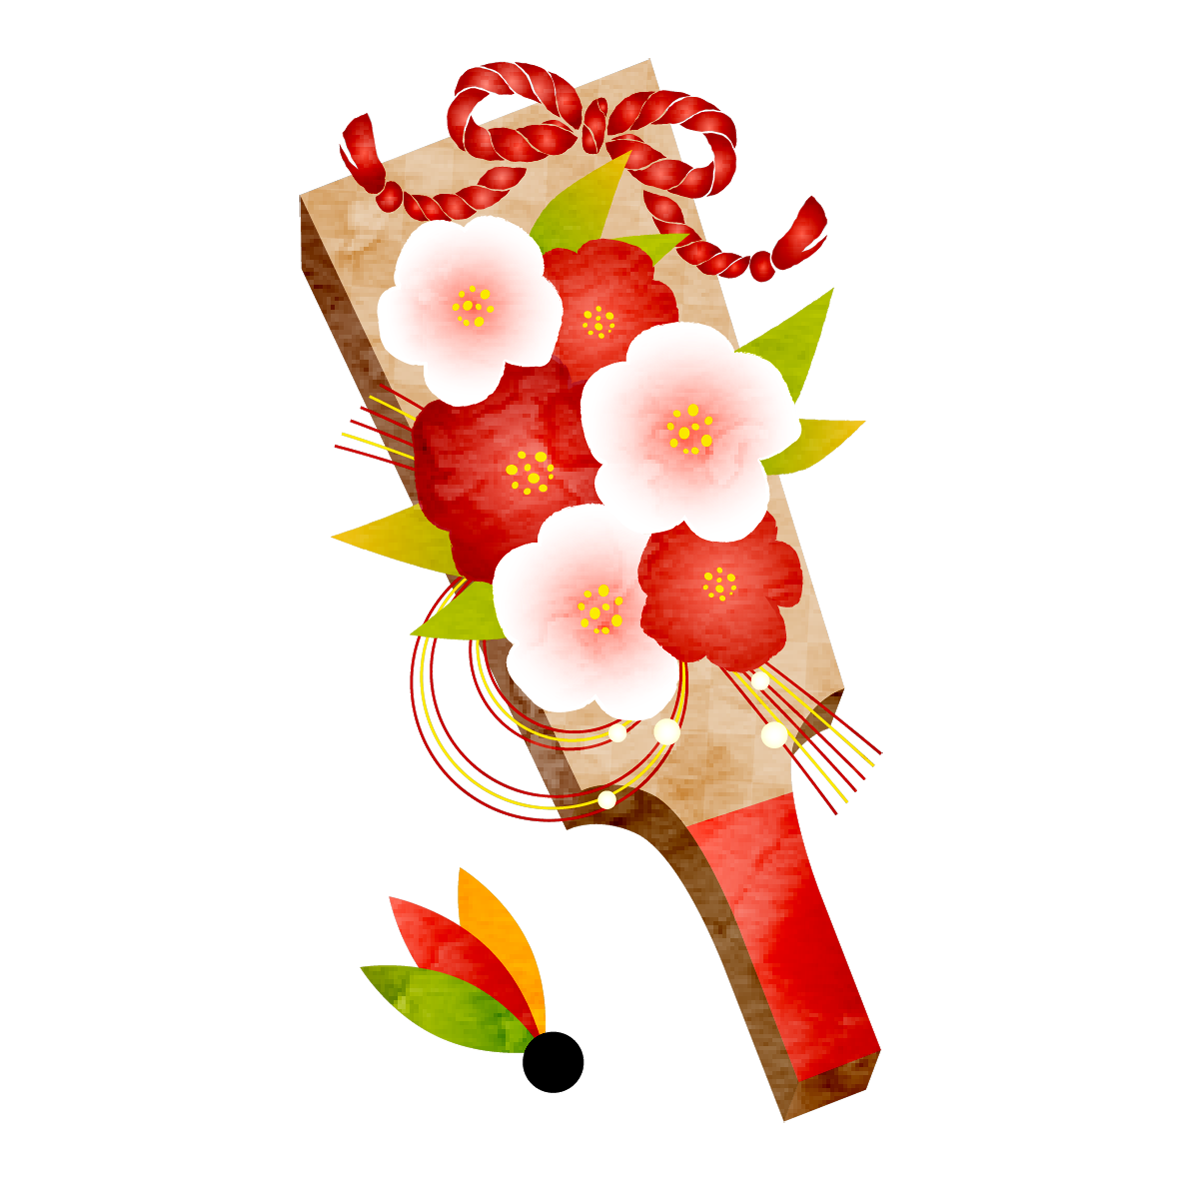 梅の花で飾られた華やかな羽子板のイラストです♪<br>
年賀状への使用はもちろんのこと、お正月遊びの紹介などのイラストとしてもオススメです。